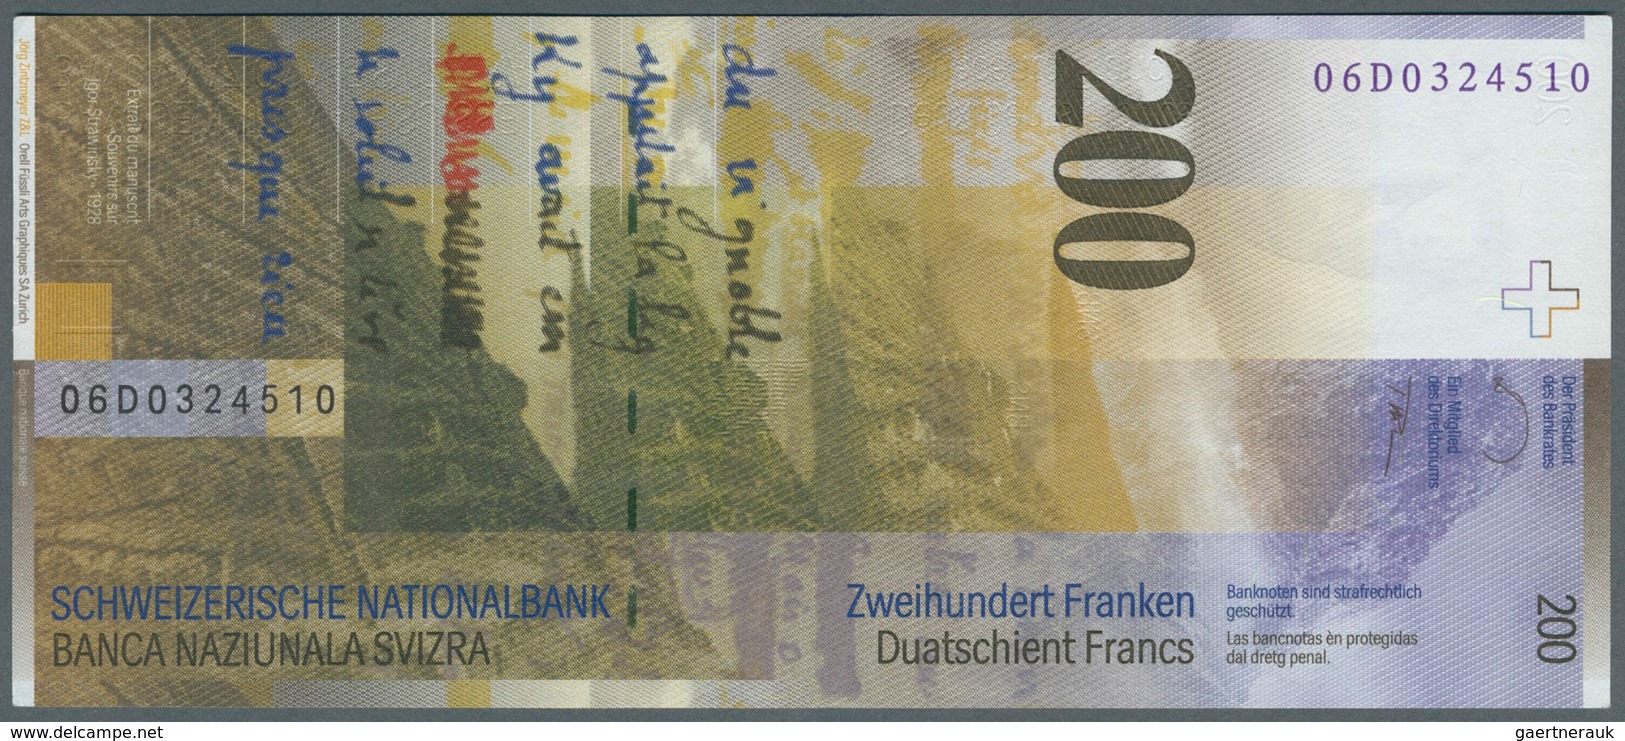 02469 Switzerland / Schweiz: 200 Franken ND(2003-08) P. 73c In Condition: AUNC. - Switzerland